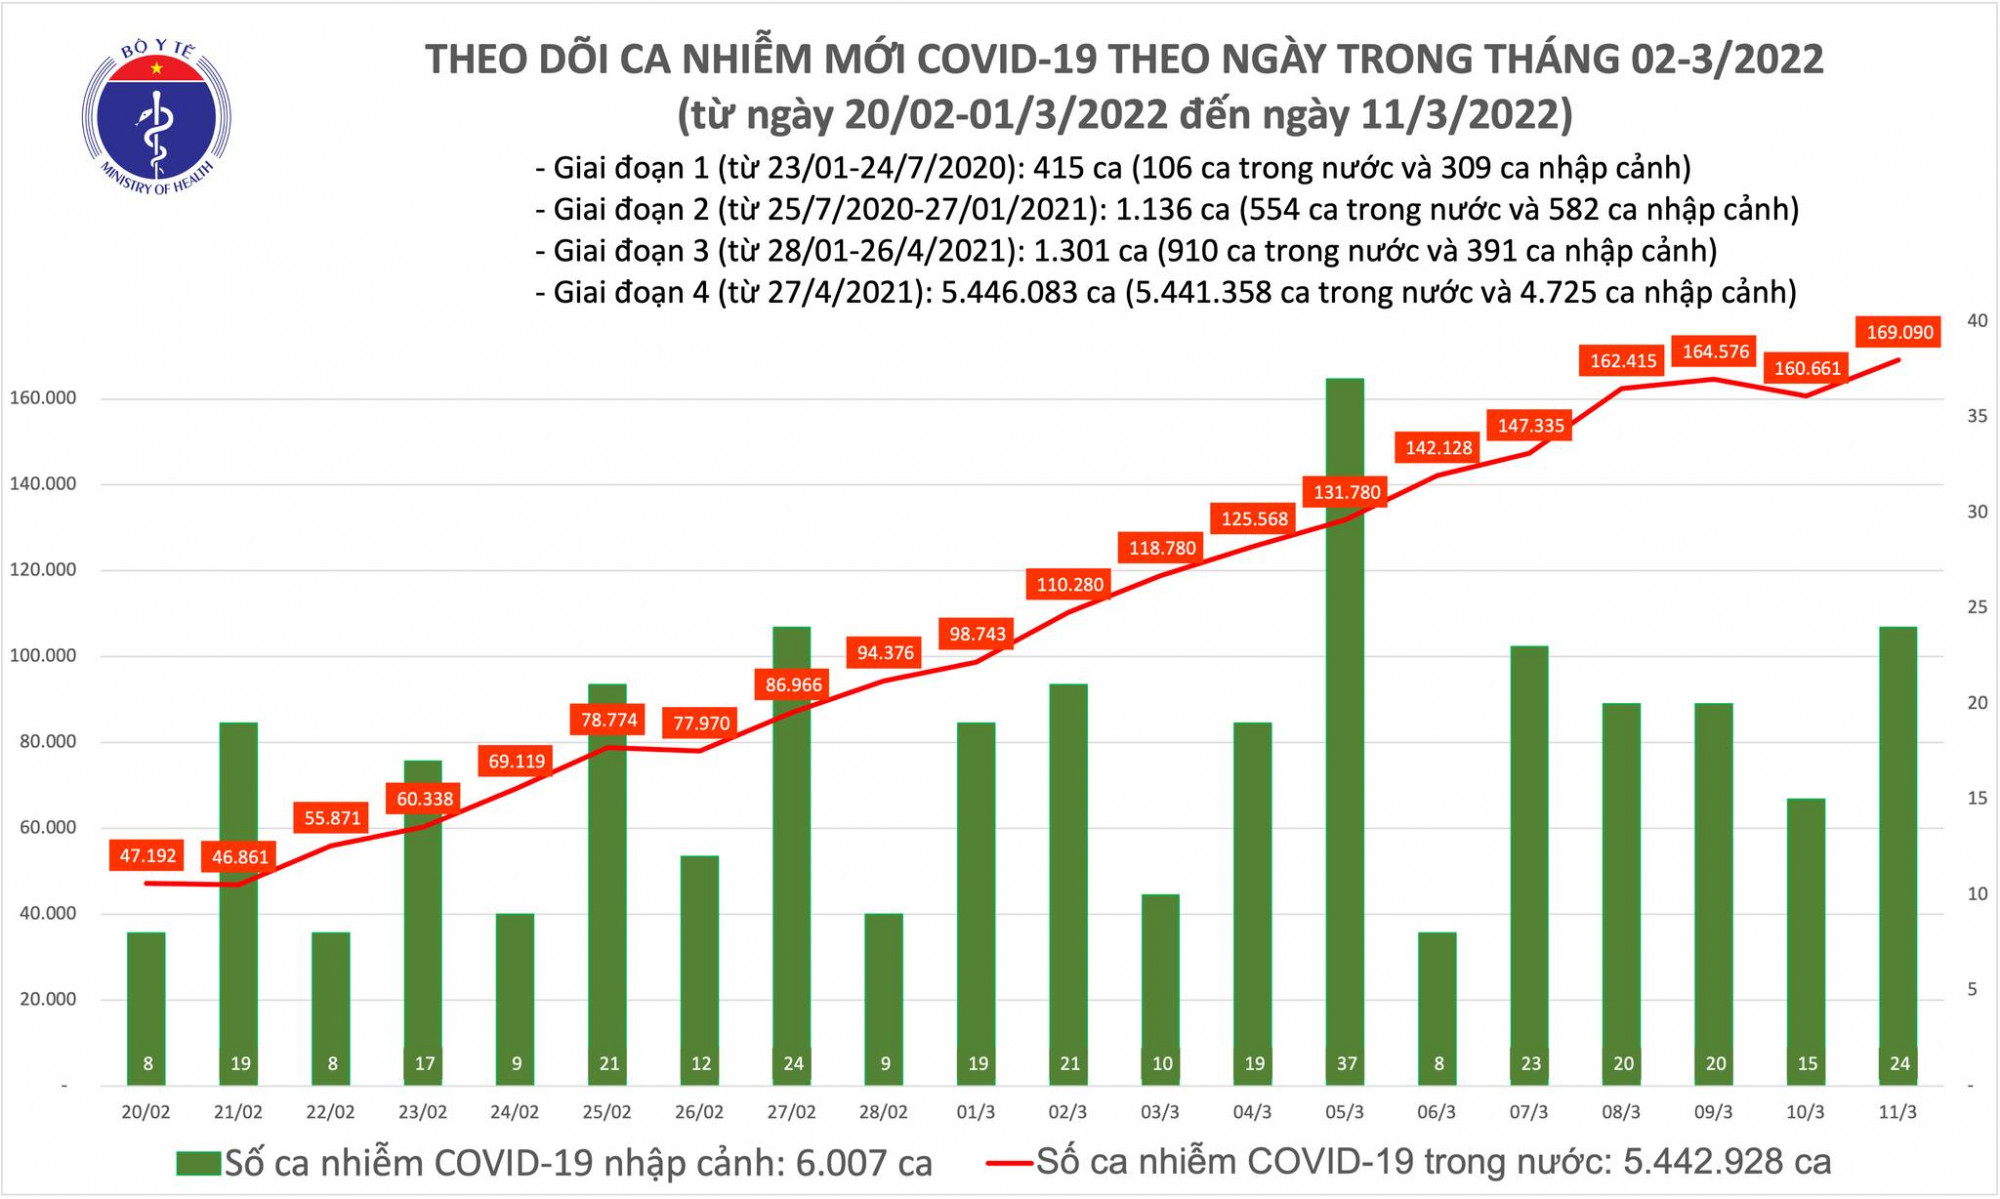 Số ca COVID-19 ngày 11/3 tăng sau khi giảm vào ngày trước đó